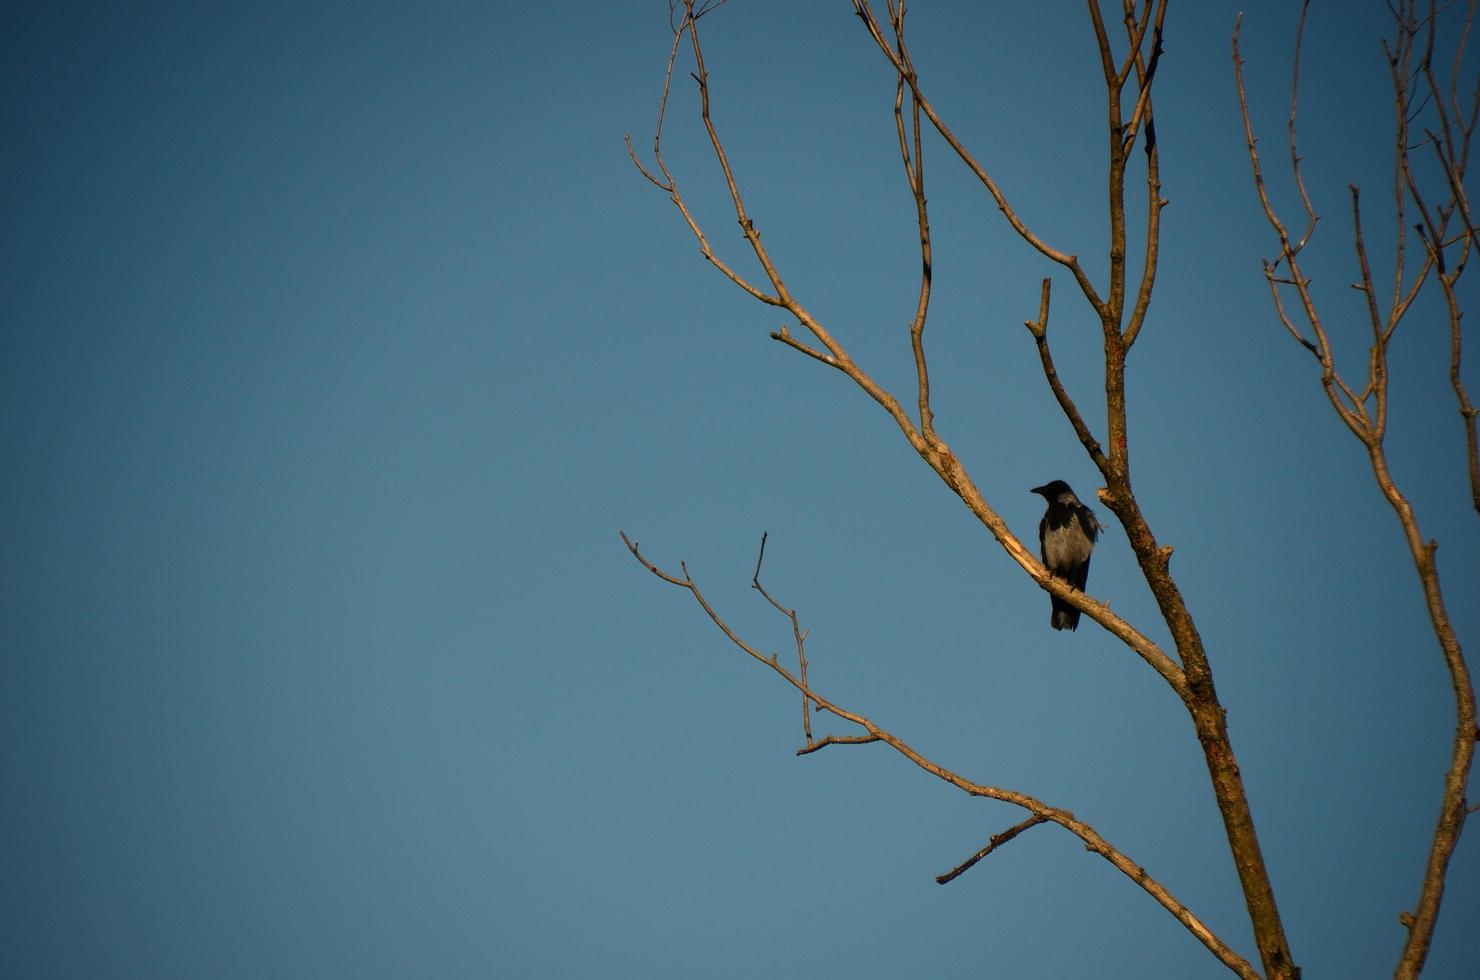 cuervo en árbol con cielo azul foto